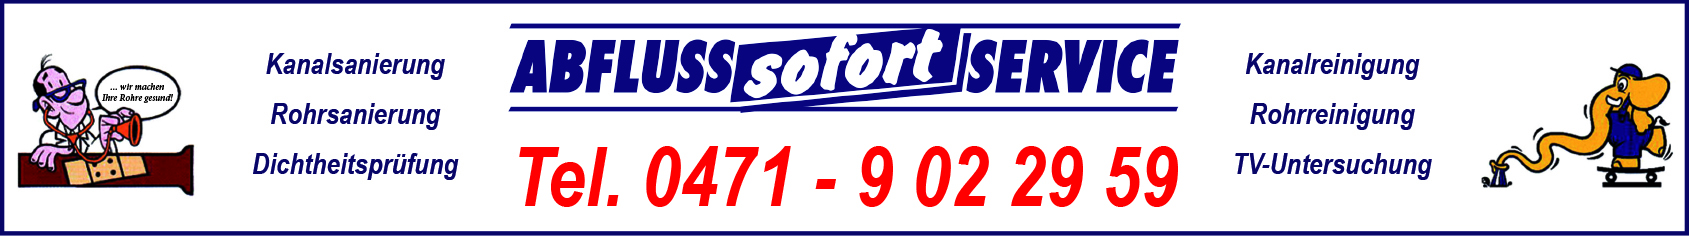 Abfluss-Sofort-Service GmbH Geschf. Bernd Detke